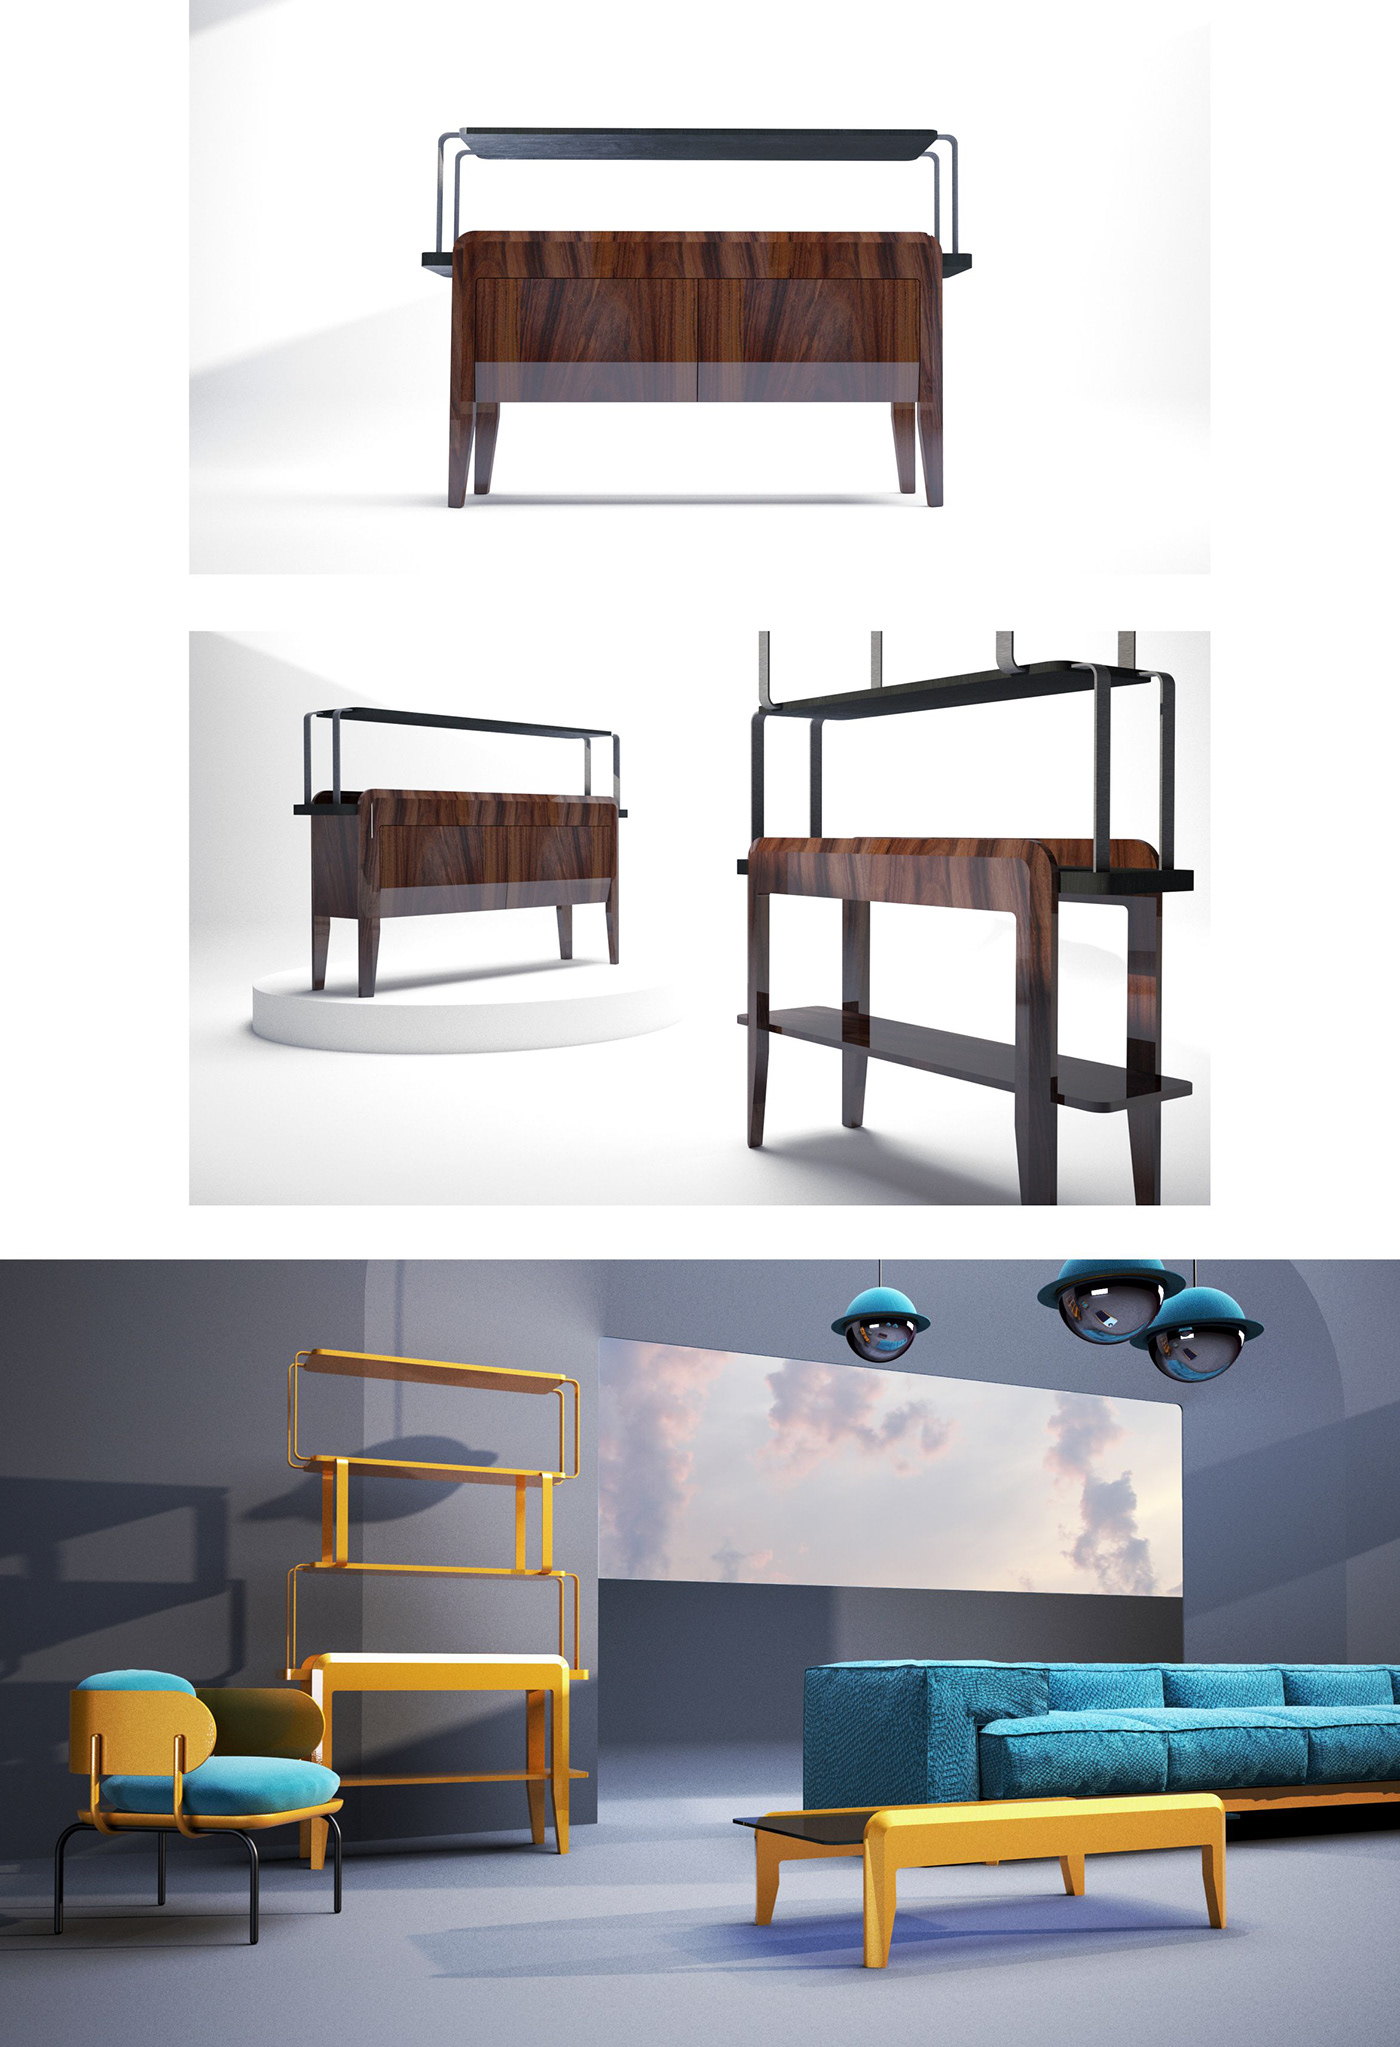 design furniture furniture design  industrial design  Interior interior design  modern product Render shelves